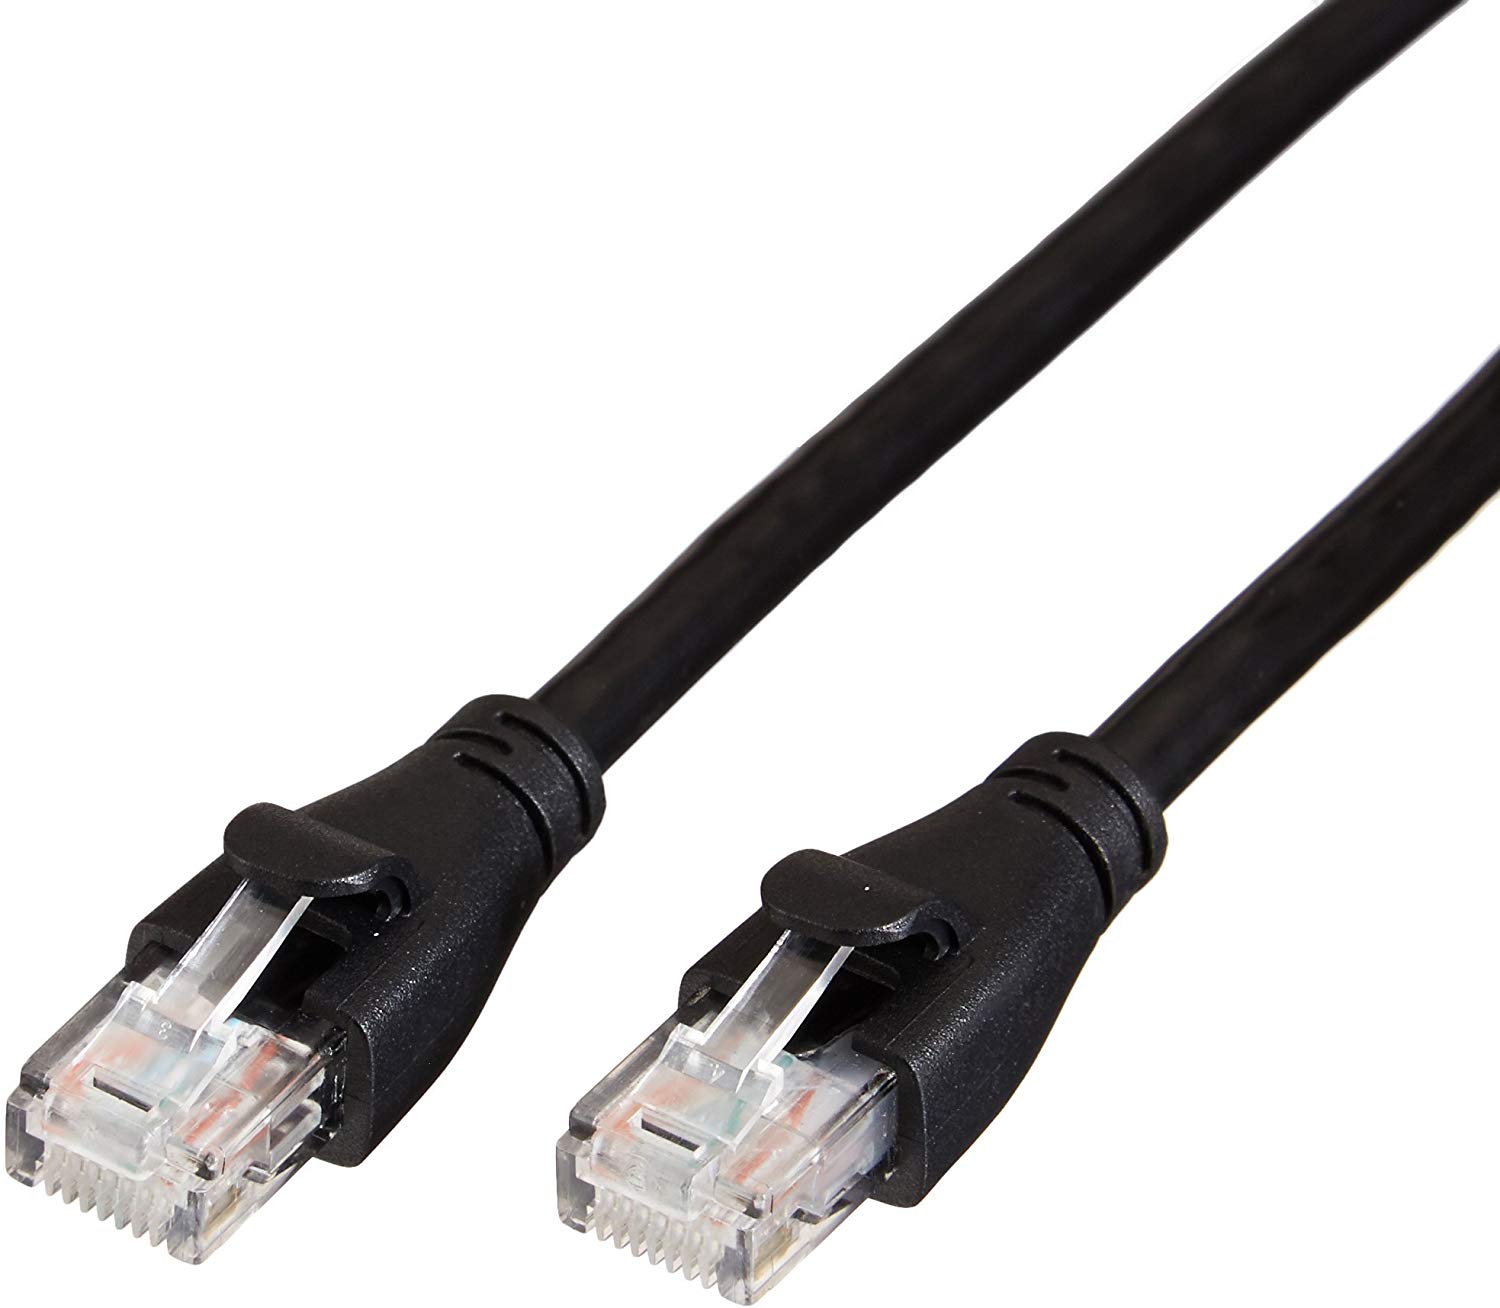 AmazonBasics Ethernet Cable